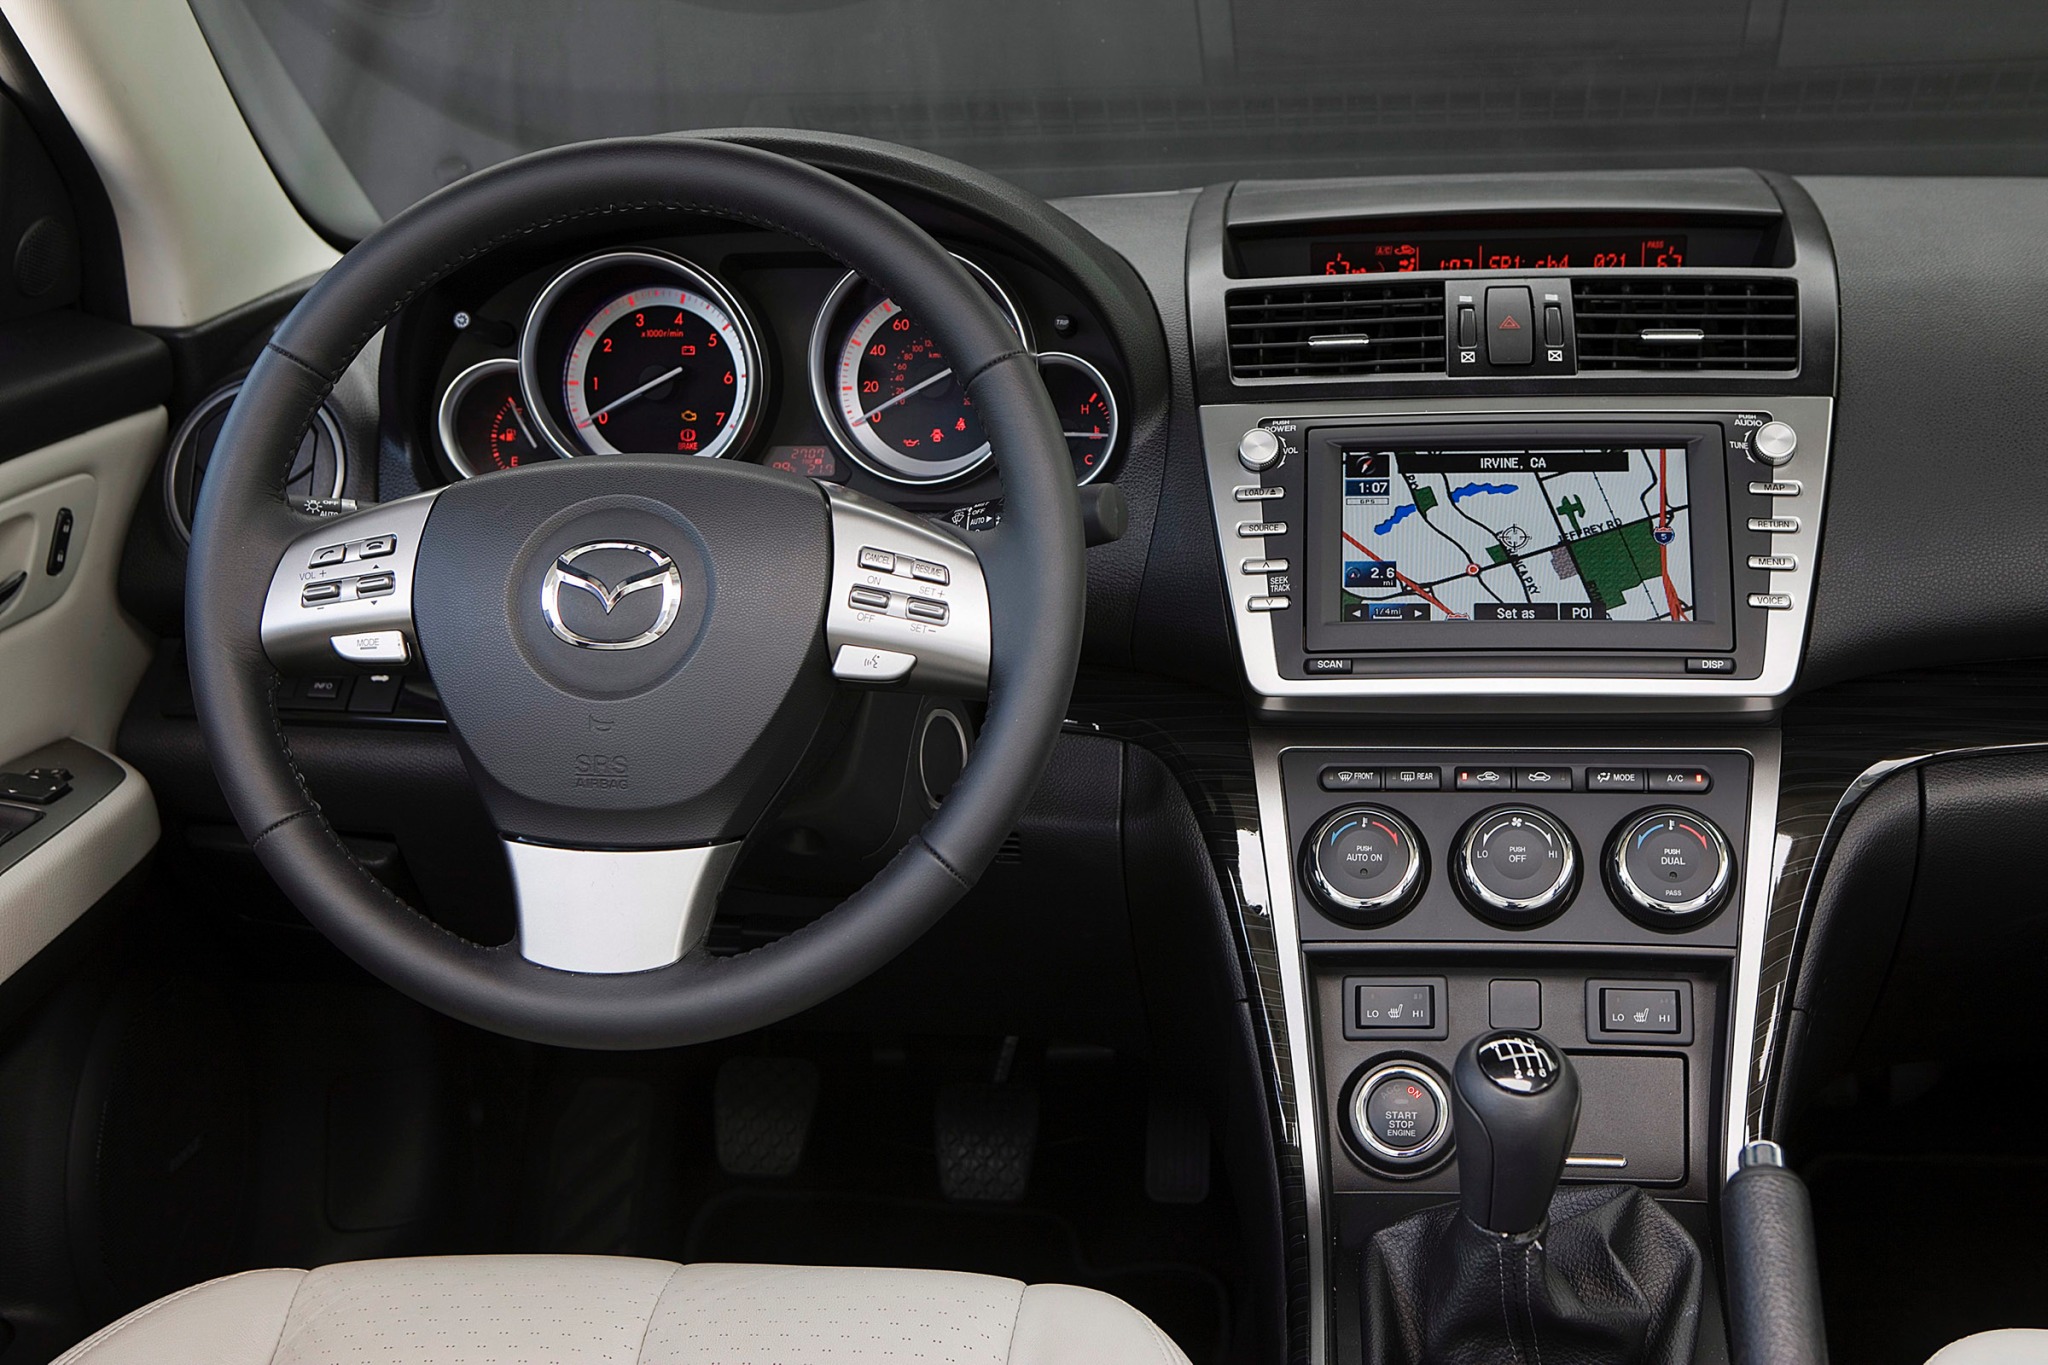 2009 Mazda Mazda6 s Grand Touring Sedan Navigation System